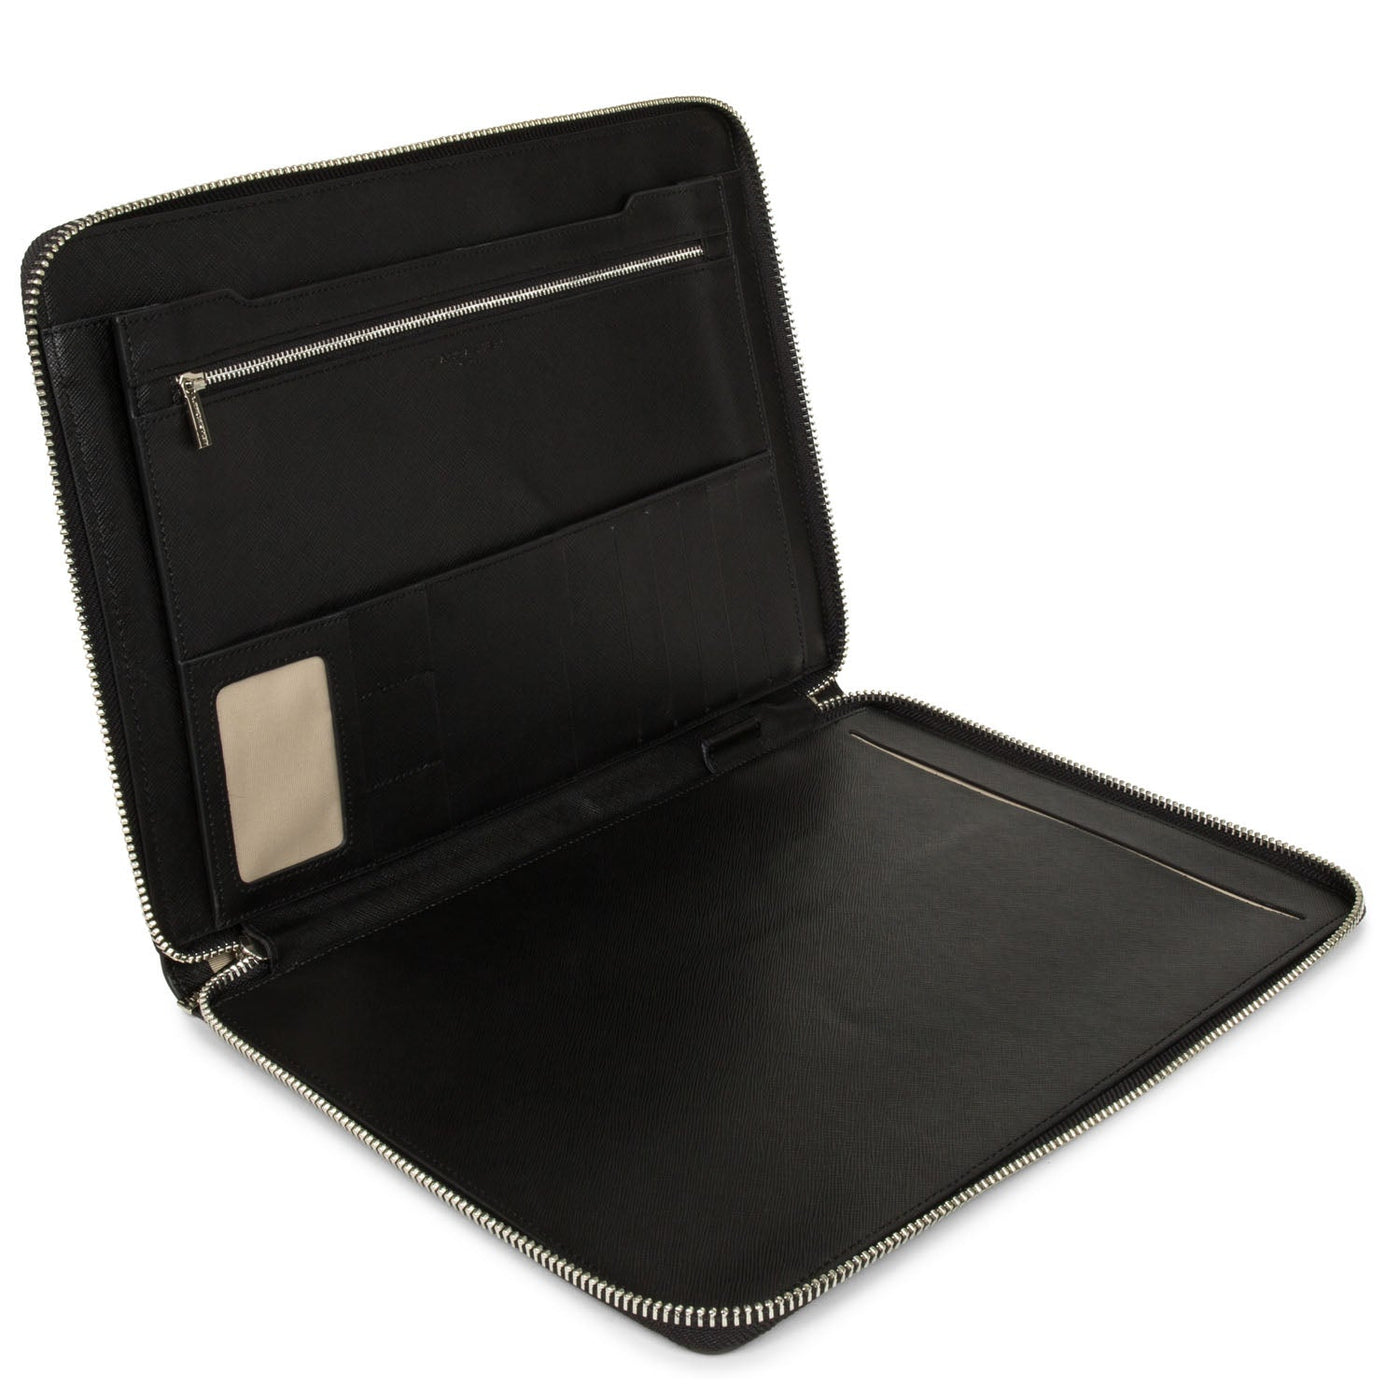 portfolio document holder bag - mathias #couleur_noir